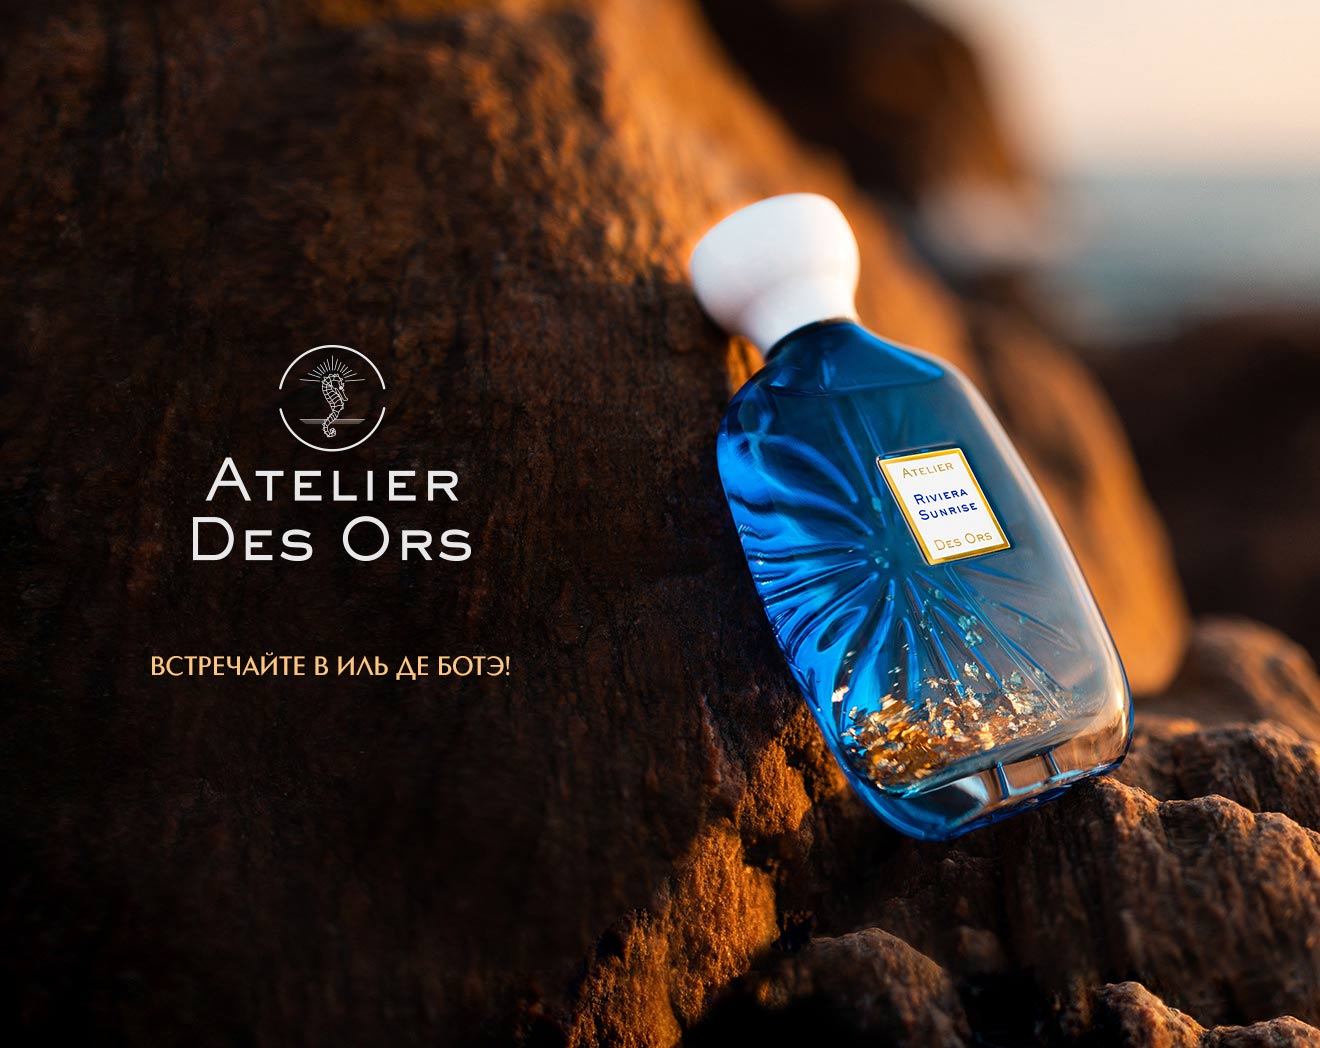 Встречайте новый бренд Atelier Des Ors в ИЛЬ ДЕ БОТЭ!